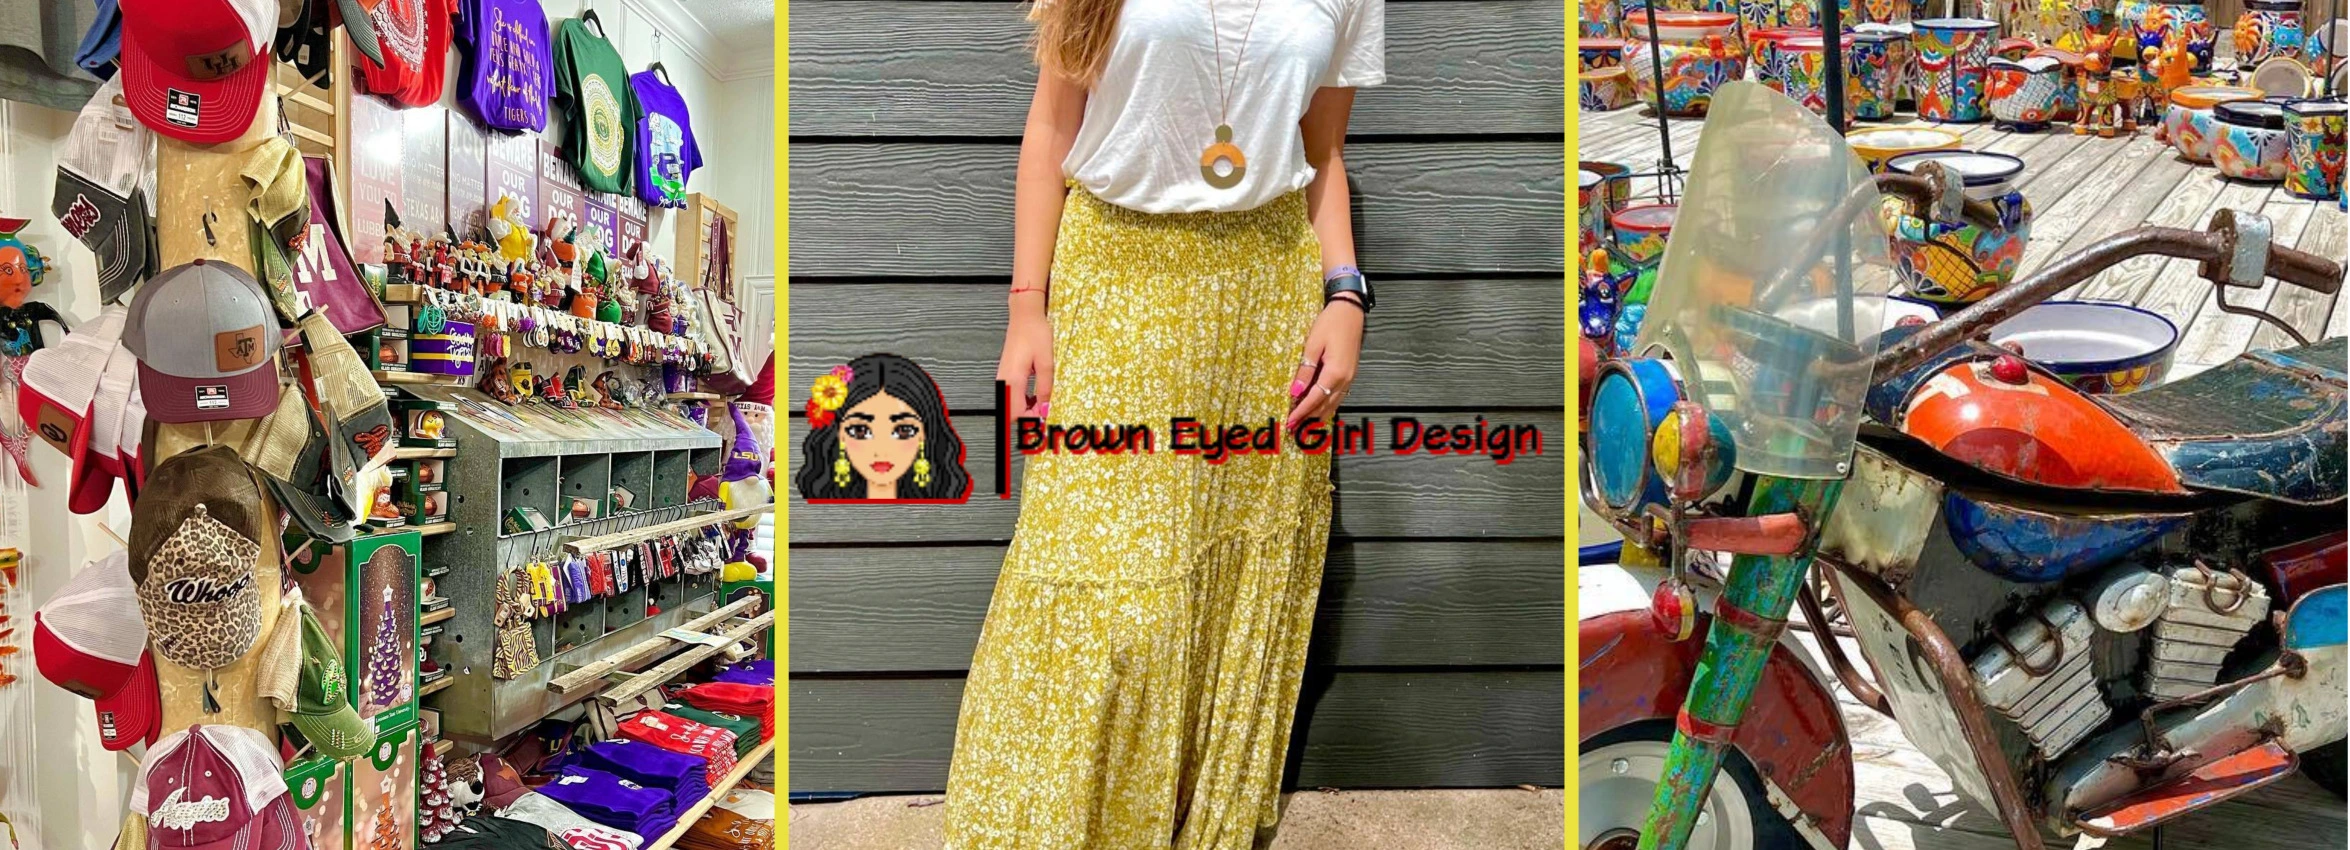 Brown-Eyed-Girl-Design_Desktop_ET